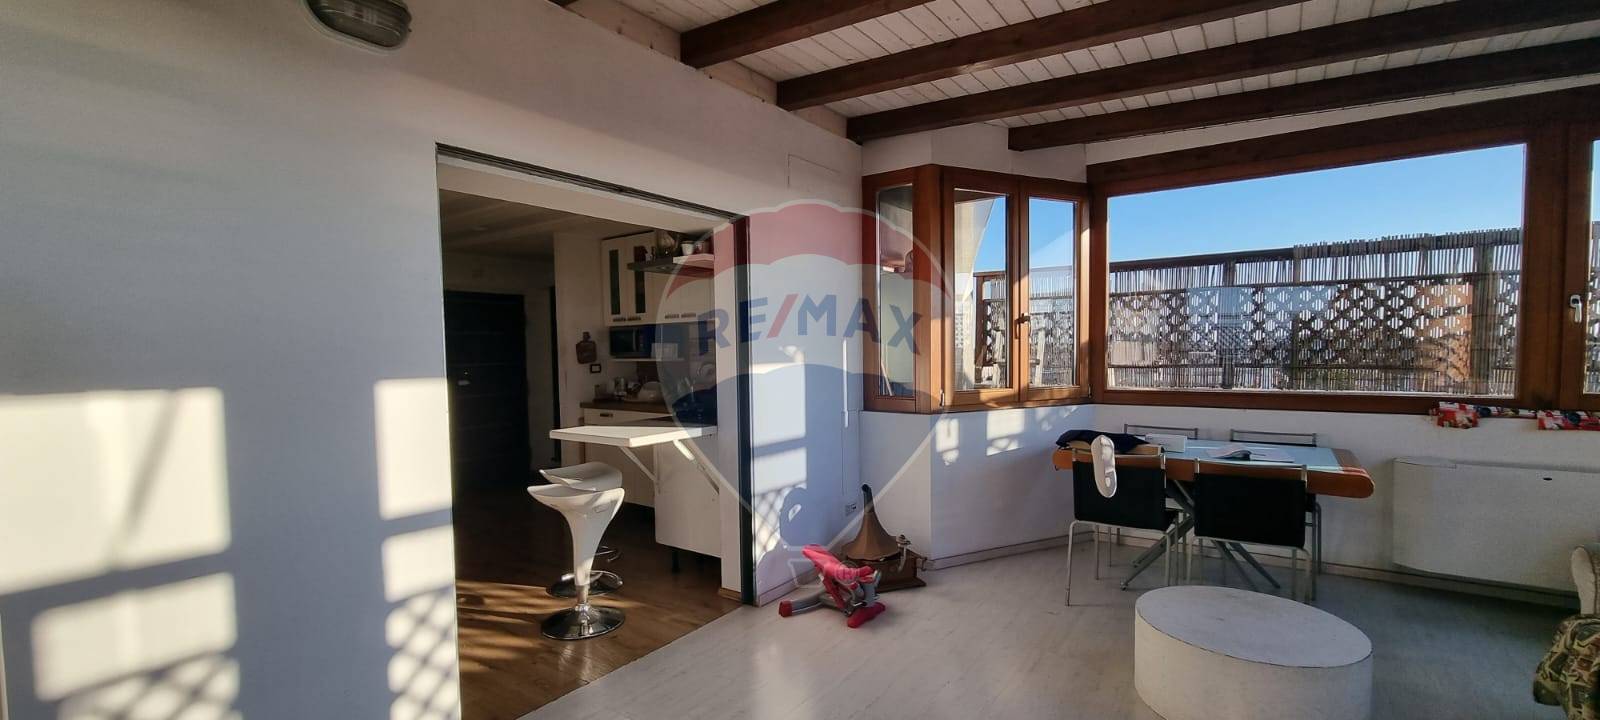 Appartamento in vendita a Pomezia, 4 locali, zona Località: Centro, prezzo € 235.000 | CambioCasa.it